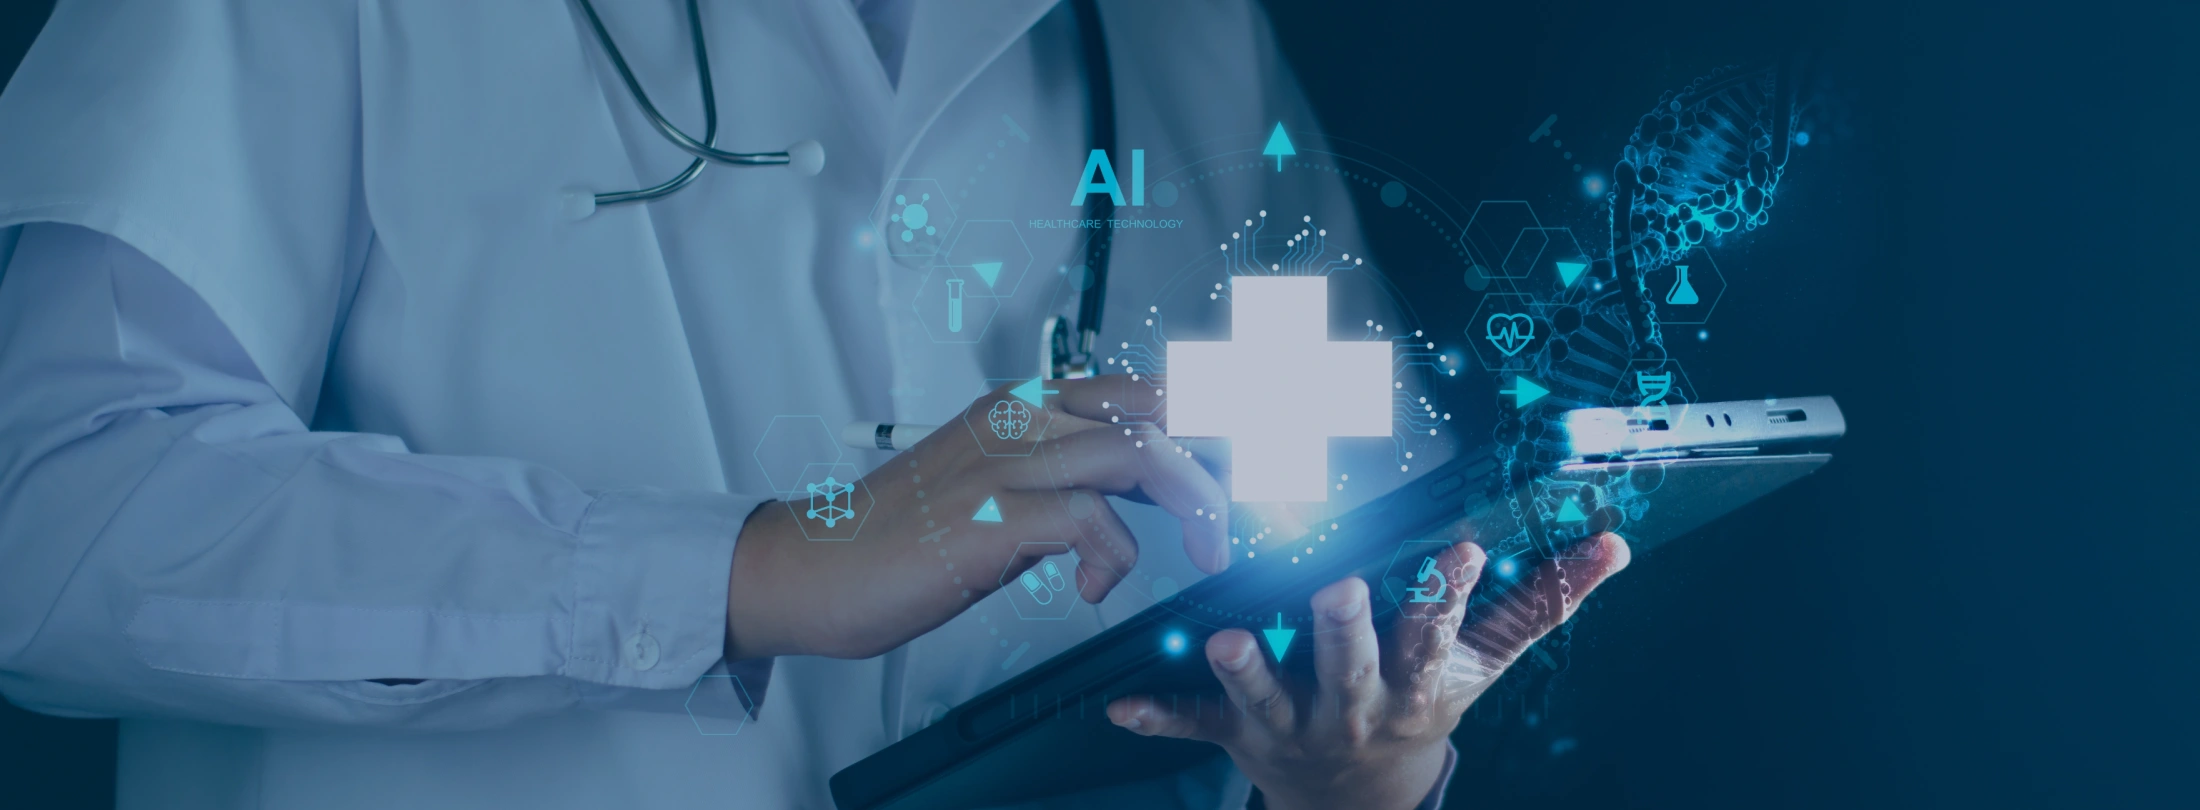 Soluciones de inteligencia artificial para medicina personalizada